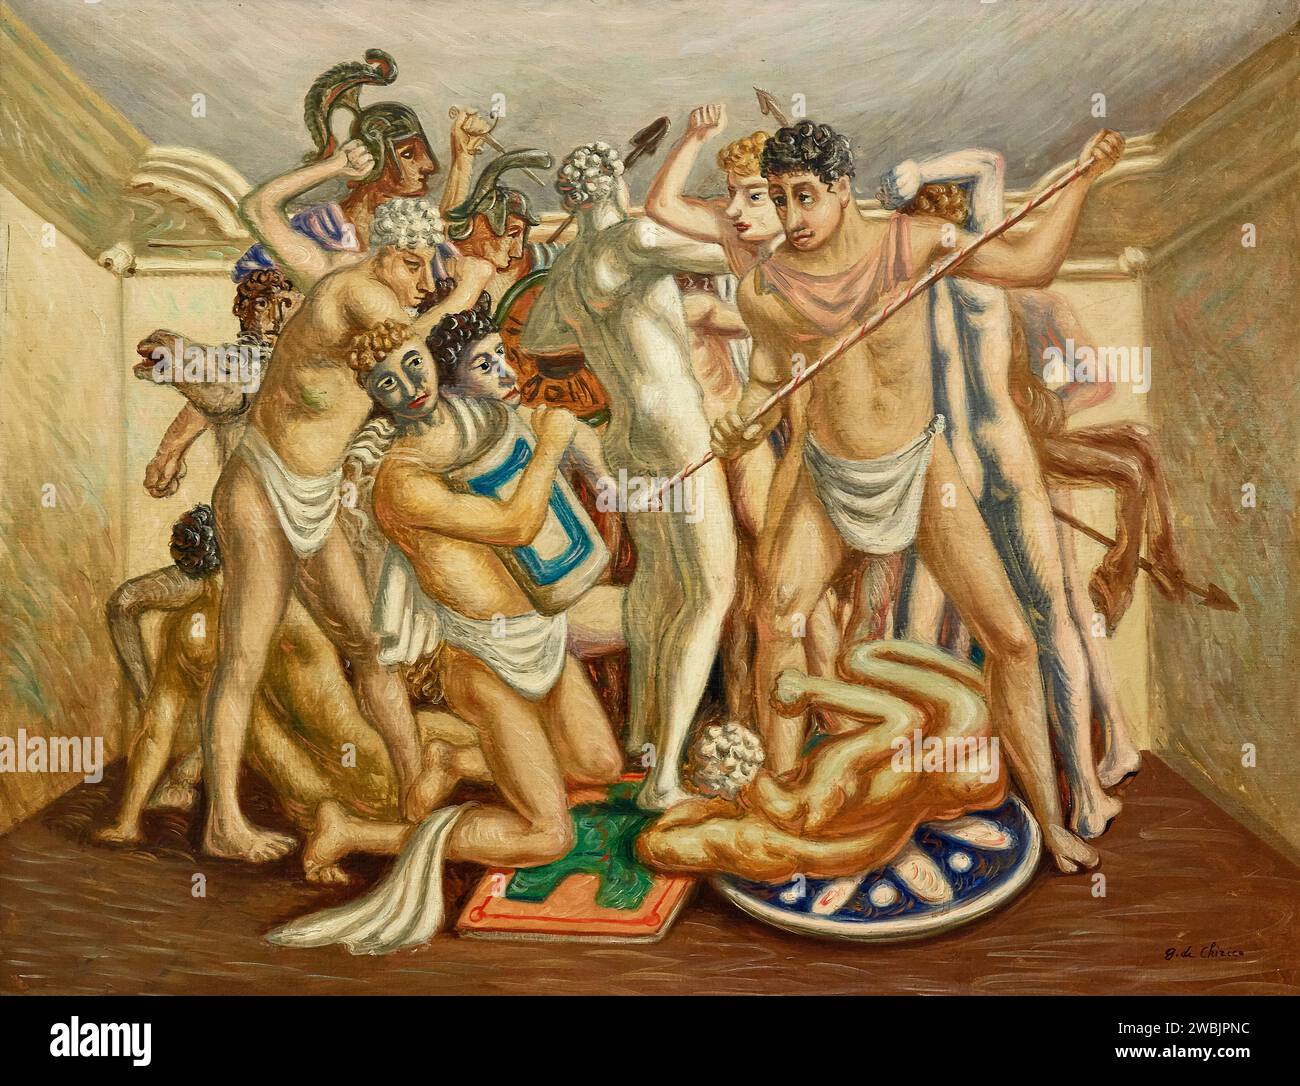 Combattimento (Gladiatori) - olio su tela - Giorgio de Chirico - 1929 - Milano, Museo del Novecento Banque D'Images